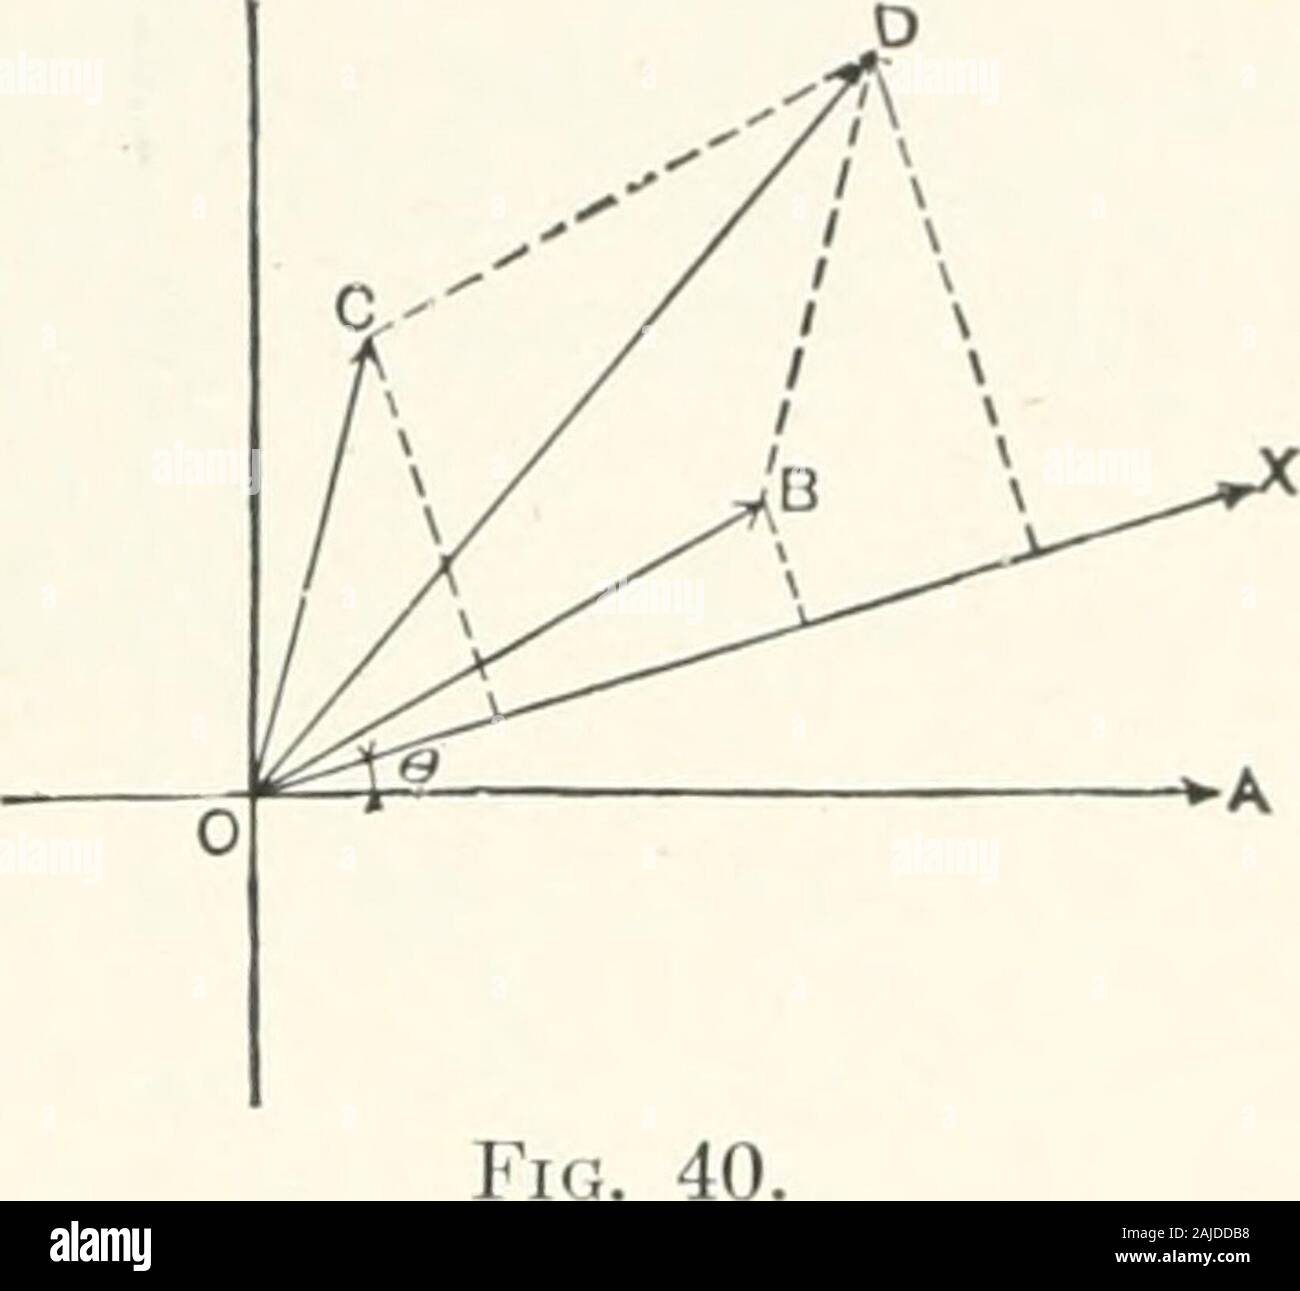 Teoria e calcolo della corrente alternata fenomeni . RISOLTO graficamente, in polarcoordinates, dalla legge del parallelogramma o il poligono ofsine onde. (Fig. 40.) COORDIXATES POLARE AXD DIAOPAMS polare 49 Kirchhoffs leggi ora assumere, per alternata onde sinusoidali, sul form: (a) la risultante di tutte le c.m.fs. in un circuito chiuso, come founilby il parallelogramma di onde sinusoidali, è pari a zero se il contatore e.m.fs.di resistenza e di reattanza sono inclusi. (B) la risultante di tutte le thecurrents verso un distributingpoint, come riscontrato dal parallelo-grammo di onde sinusoidali, è zero. L'equazione power expre Foto Stock